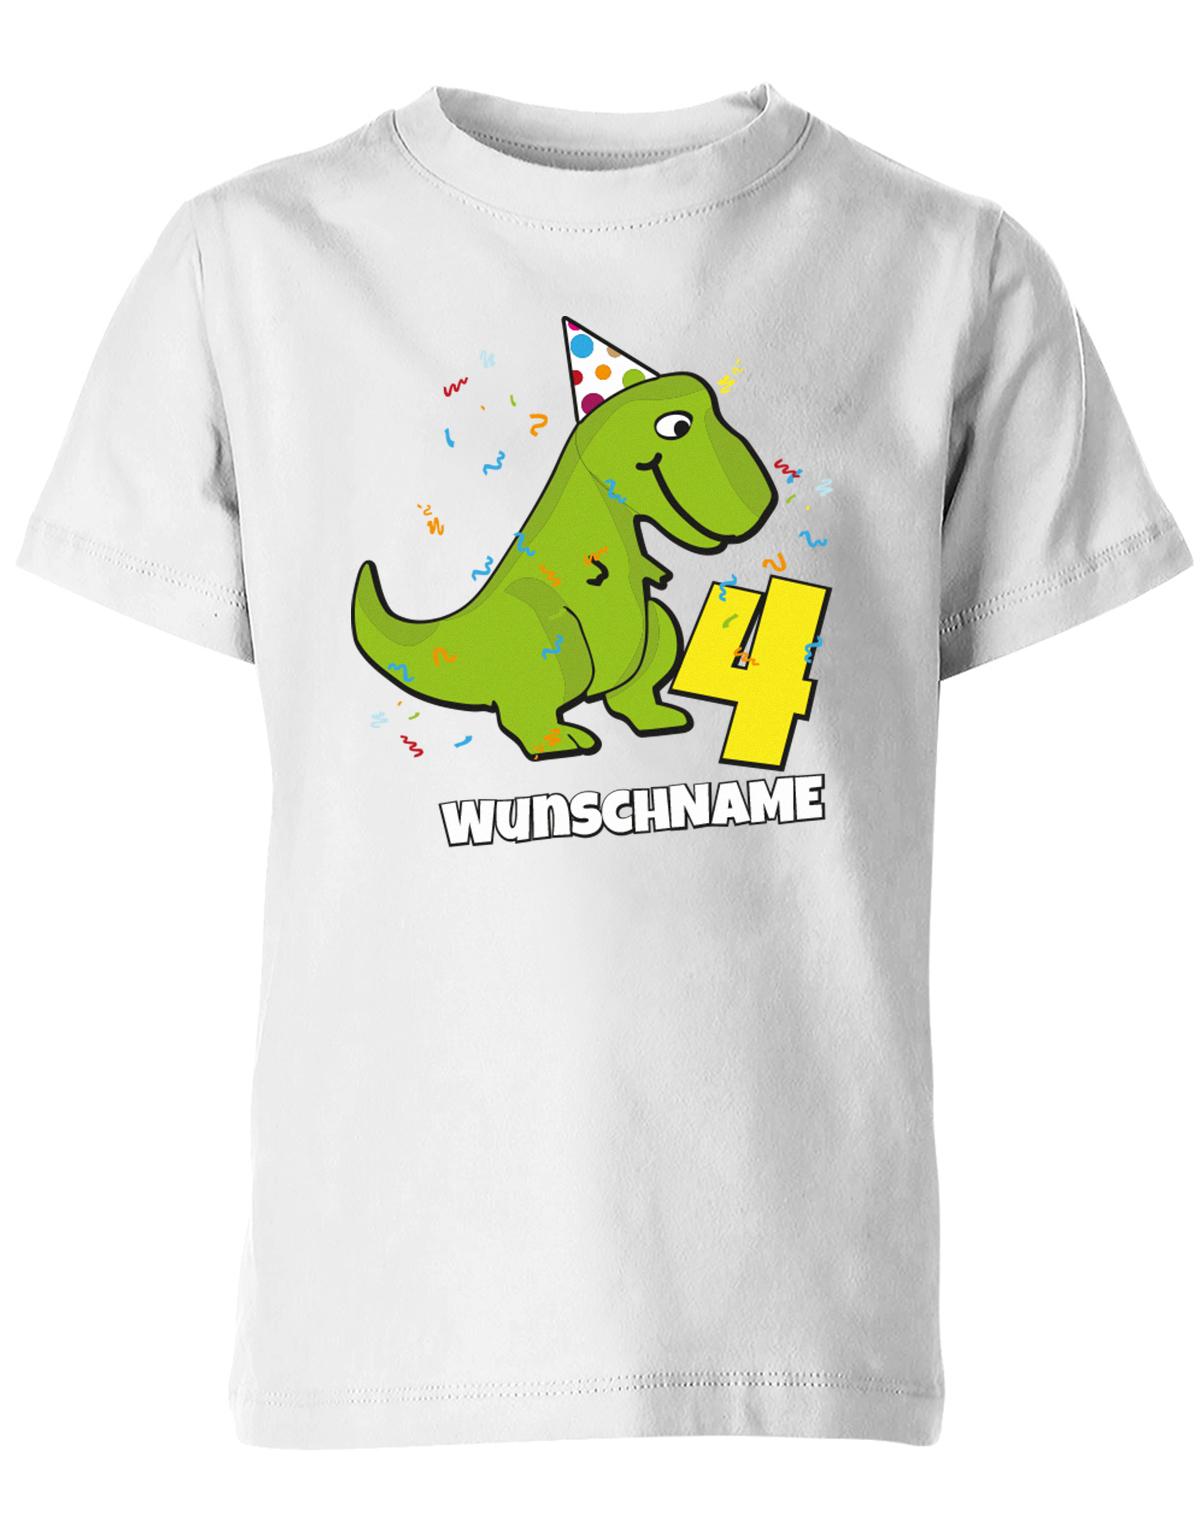 ich-bin-4-Dinosaurier-t-rex-wunschname-geburtstag-kinder-shirt-weiss